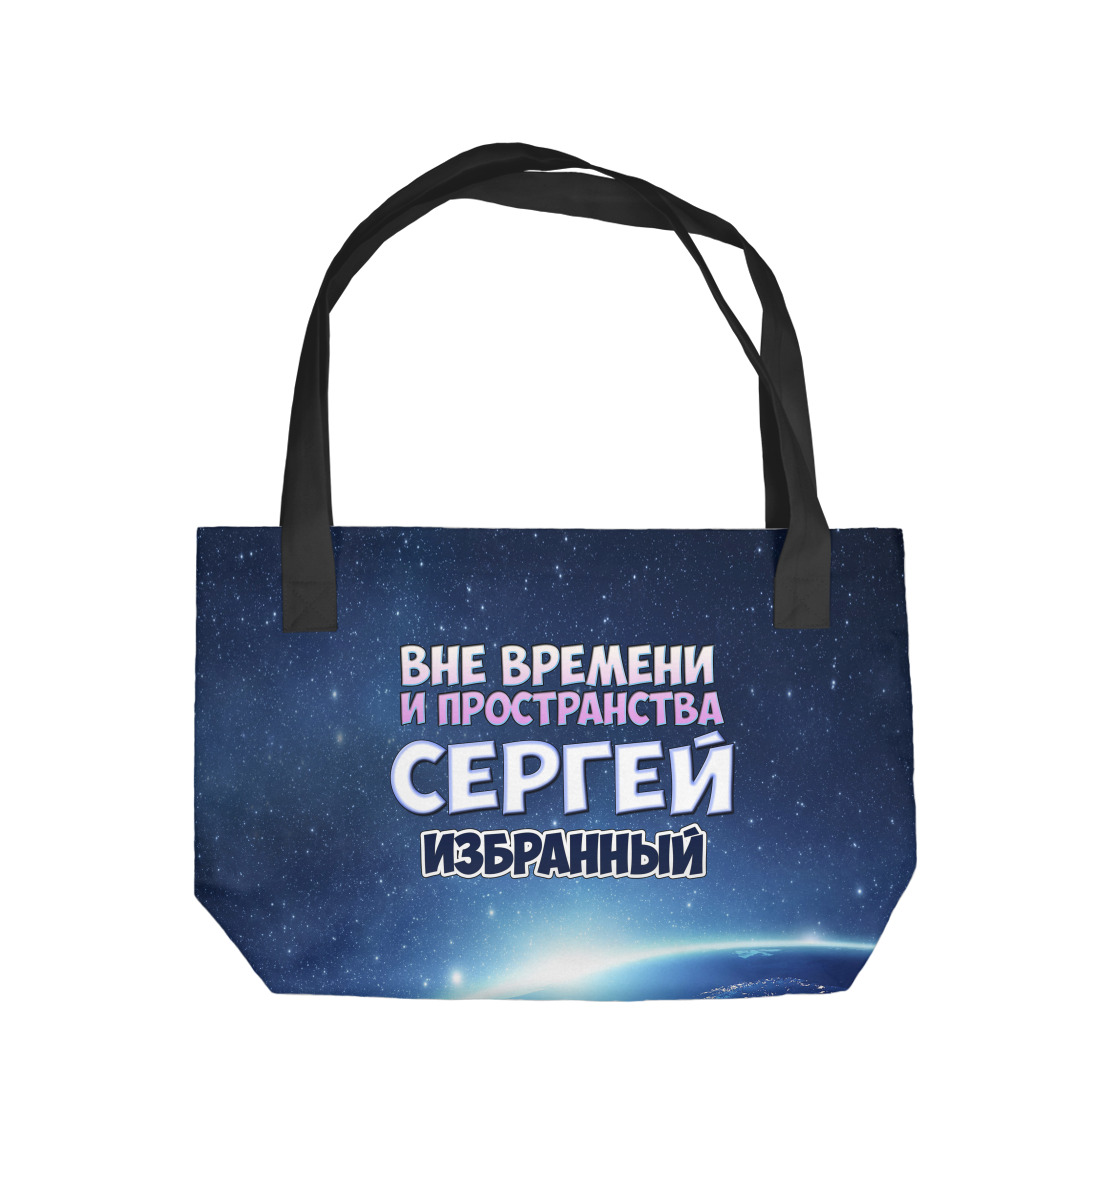 Купить Пляжная сумка Сергей избранный, артикул IMR-941615-supmp